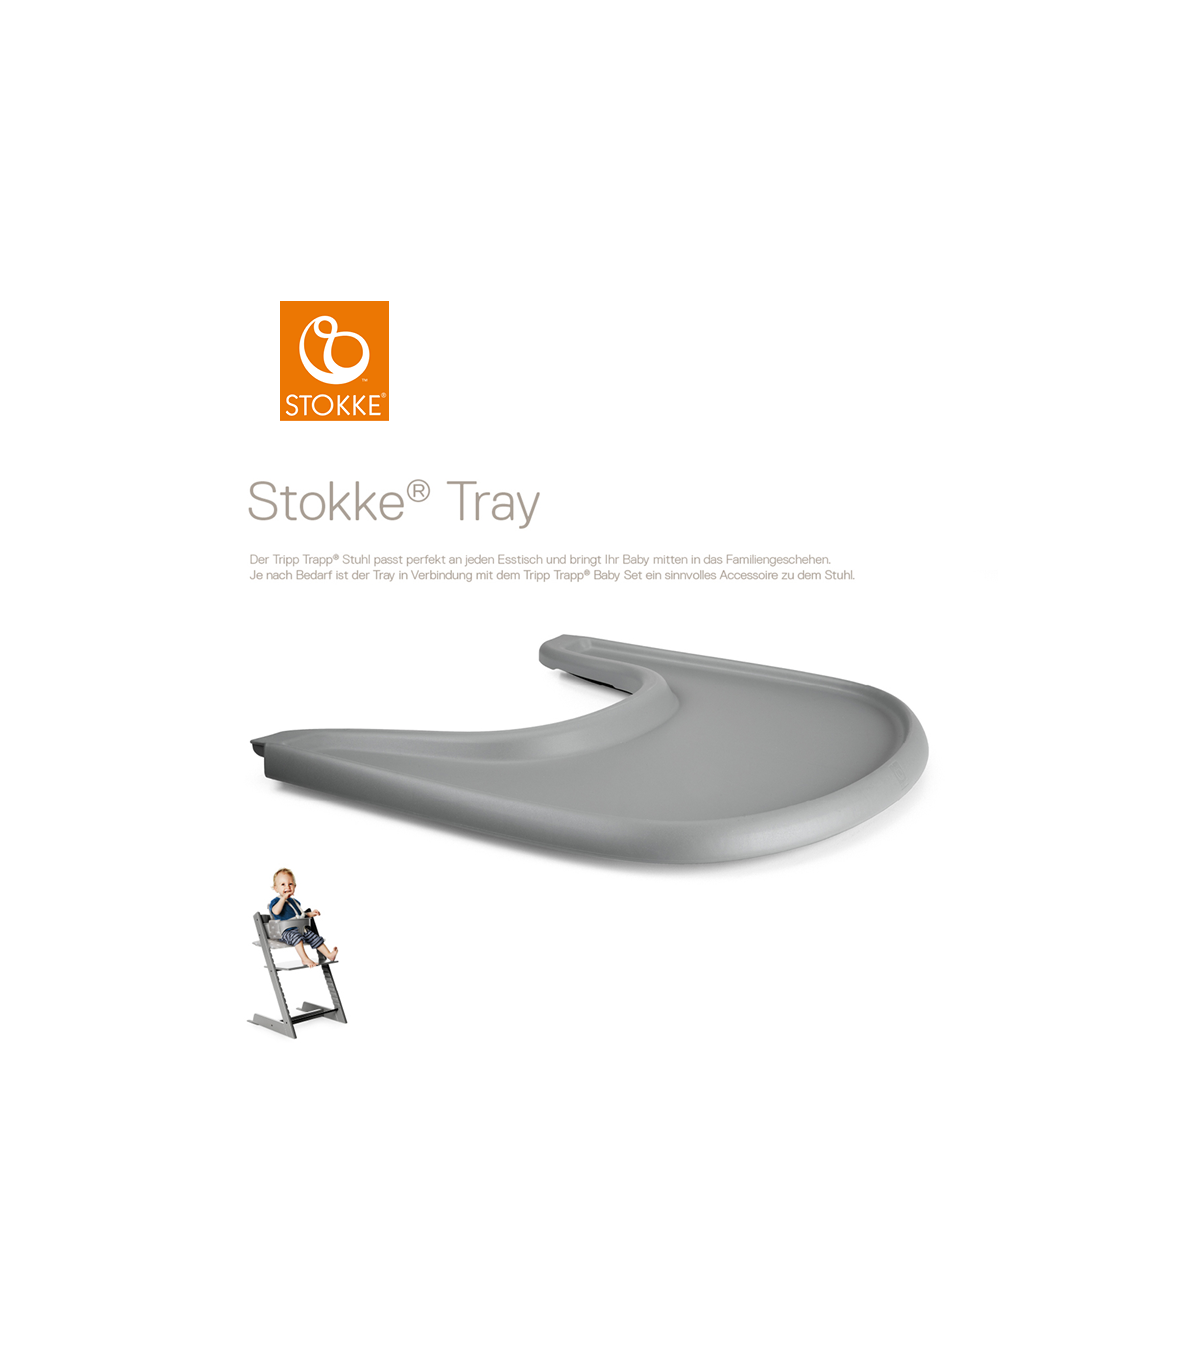 Stokke Tray Storm Grey (Tisch für Tripp Trapp)